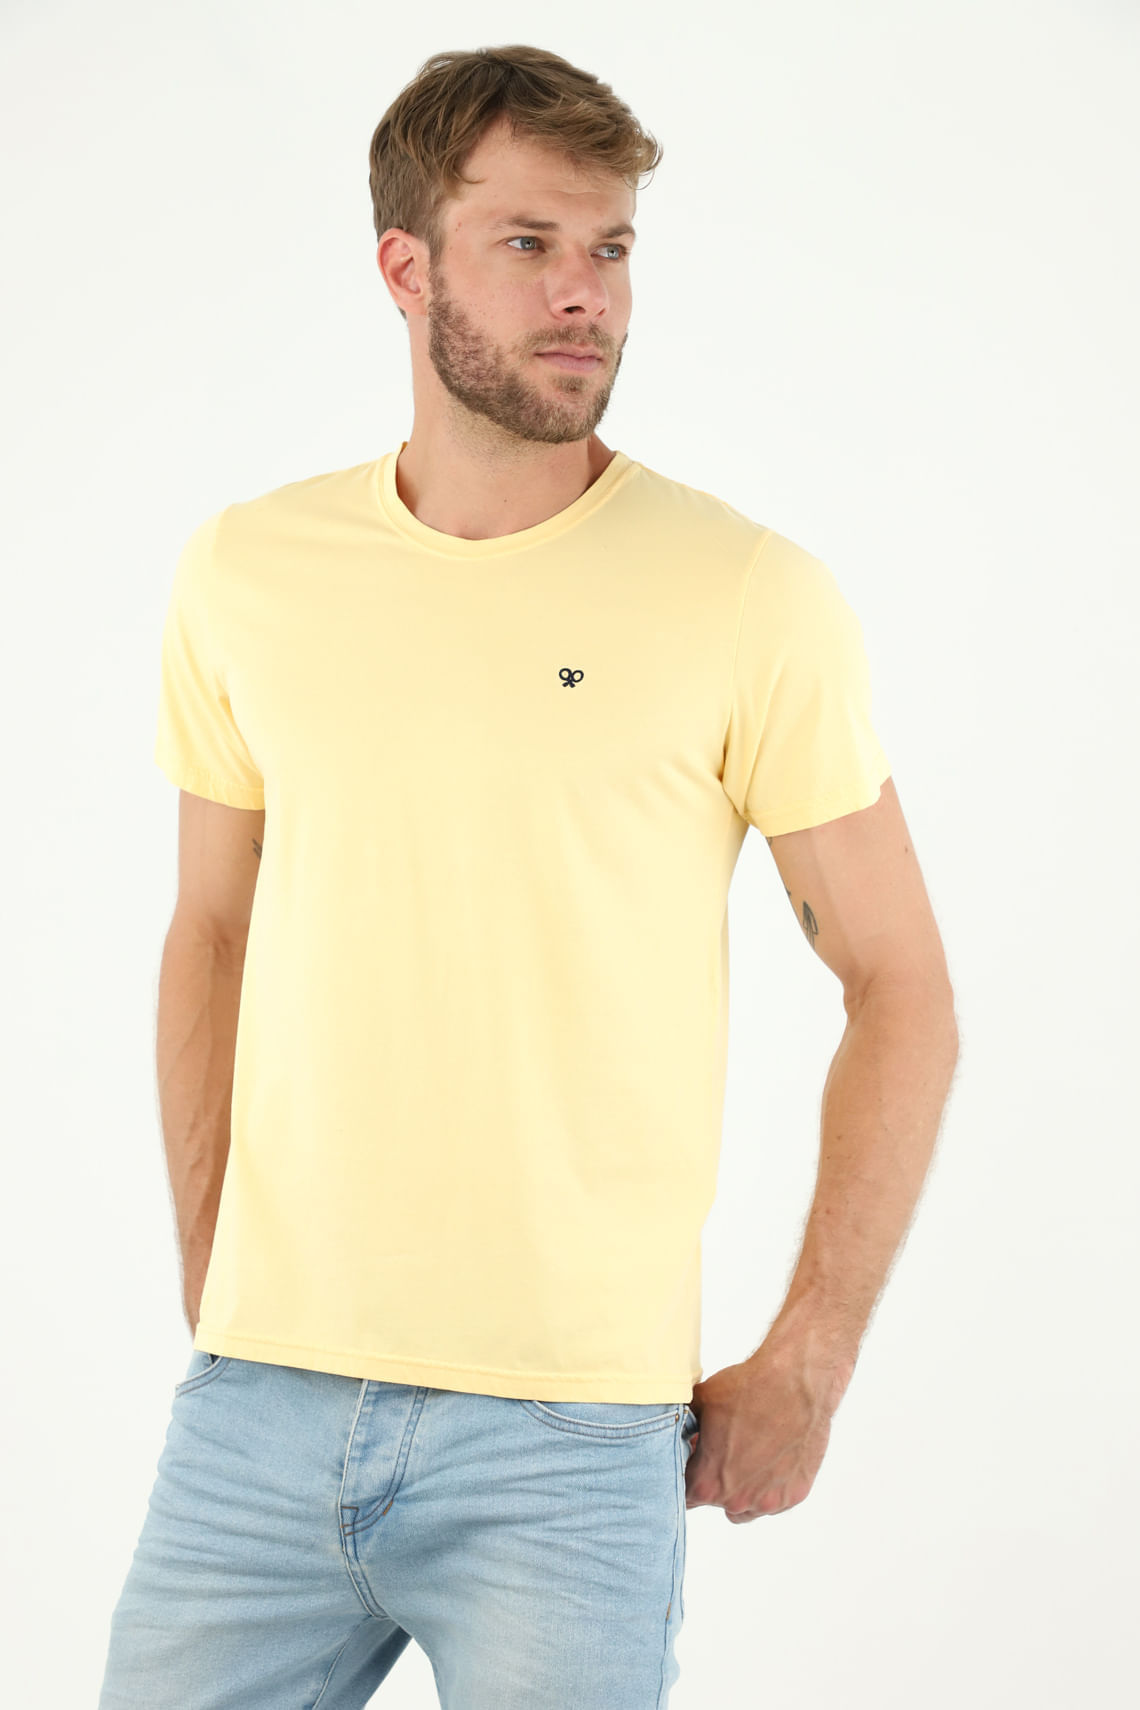 Camisetas Amarillas Hombre